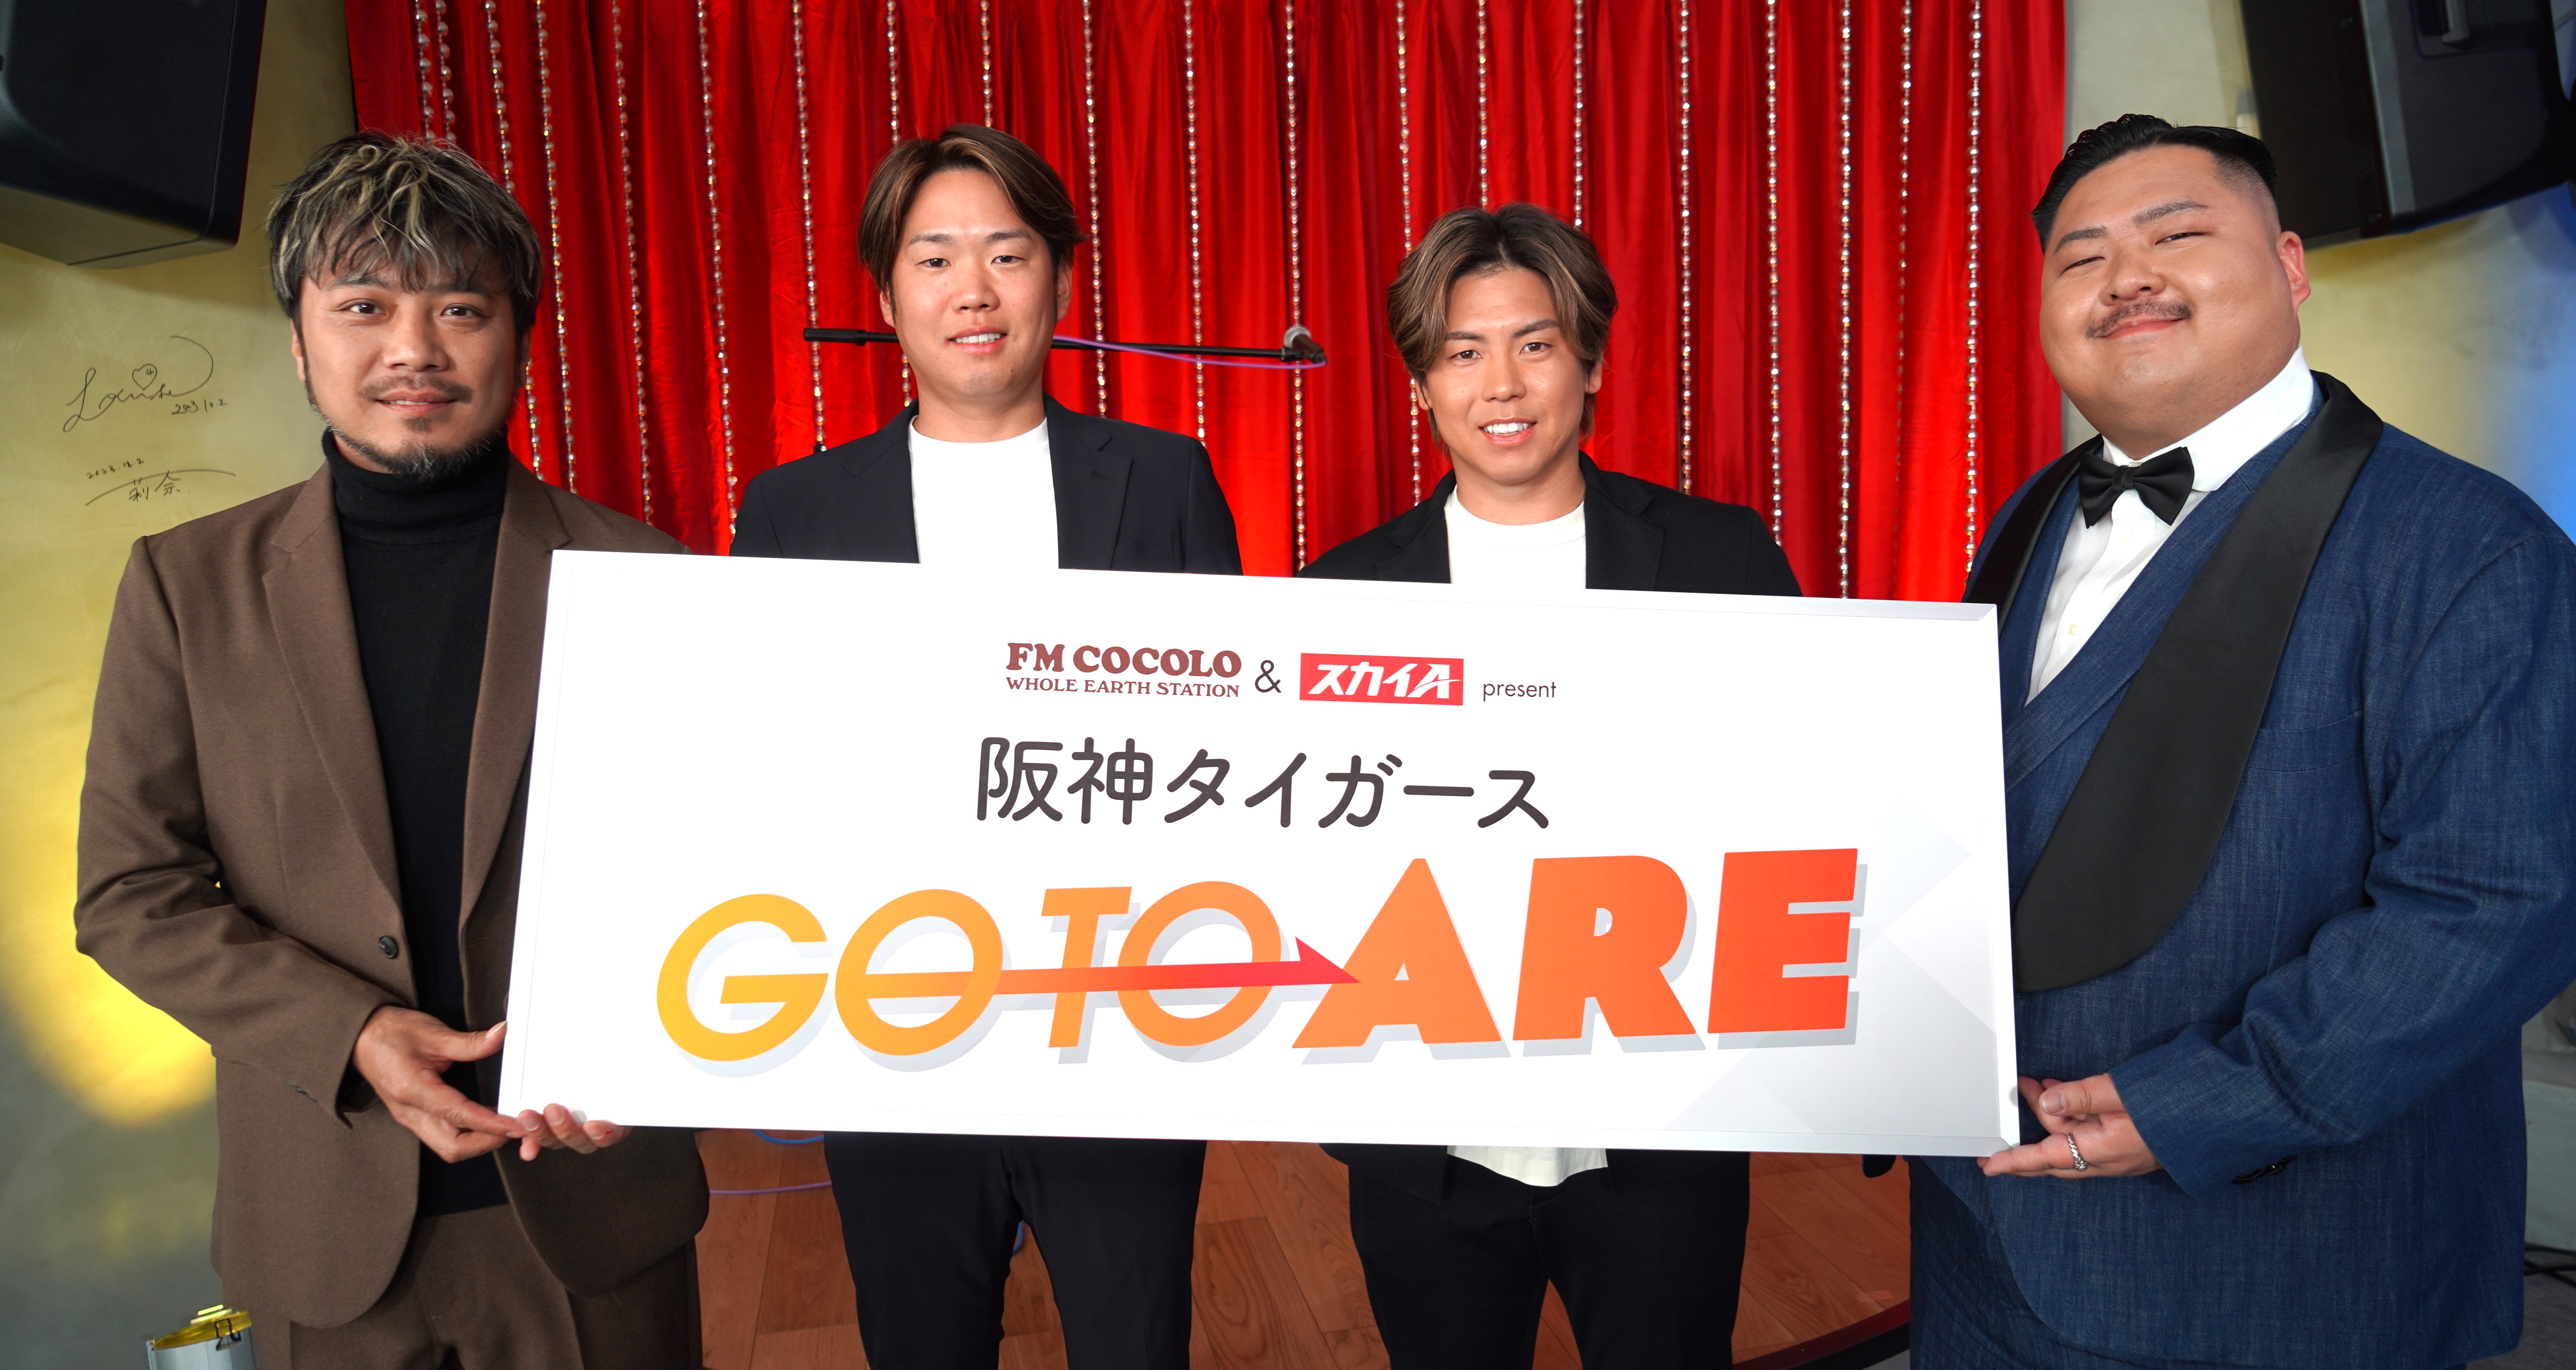 FM COCOLO&スカイA present 阪神タイガース Go to ARE